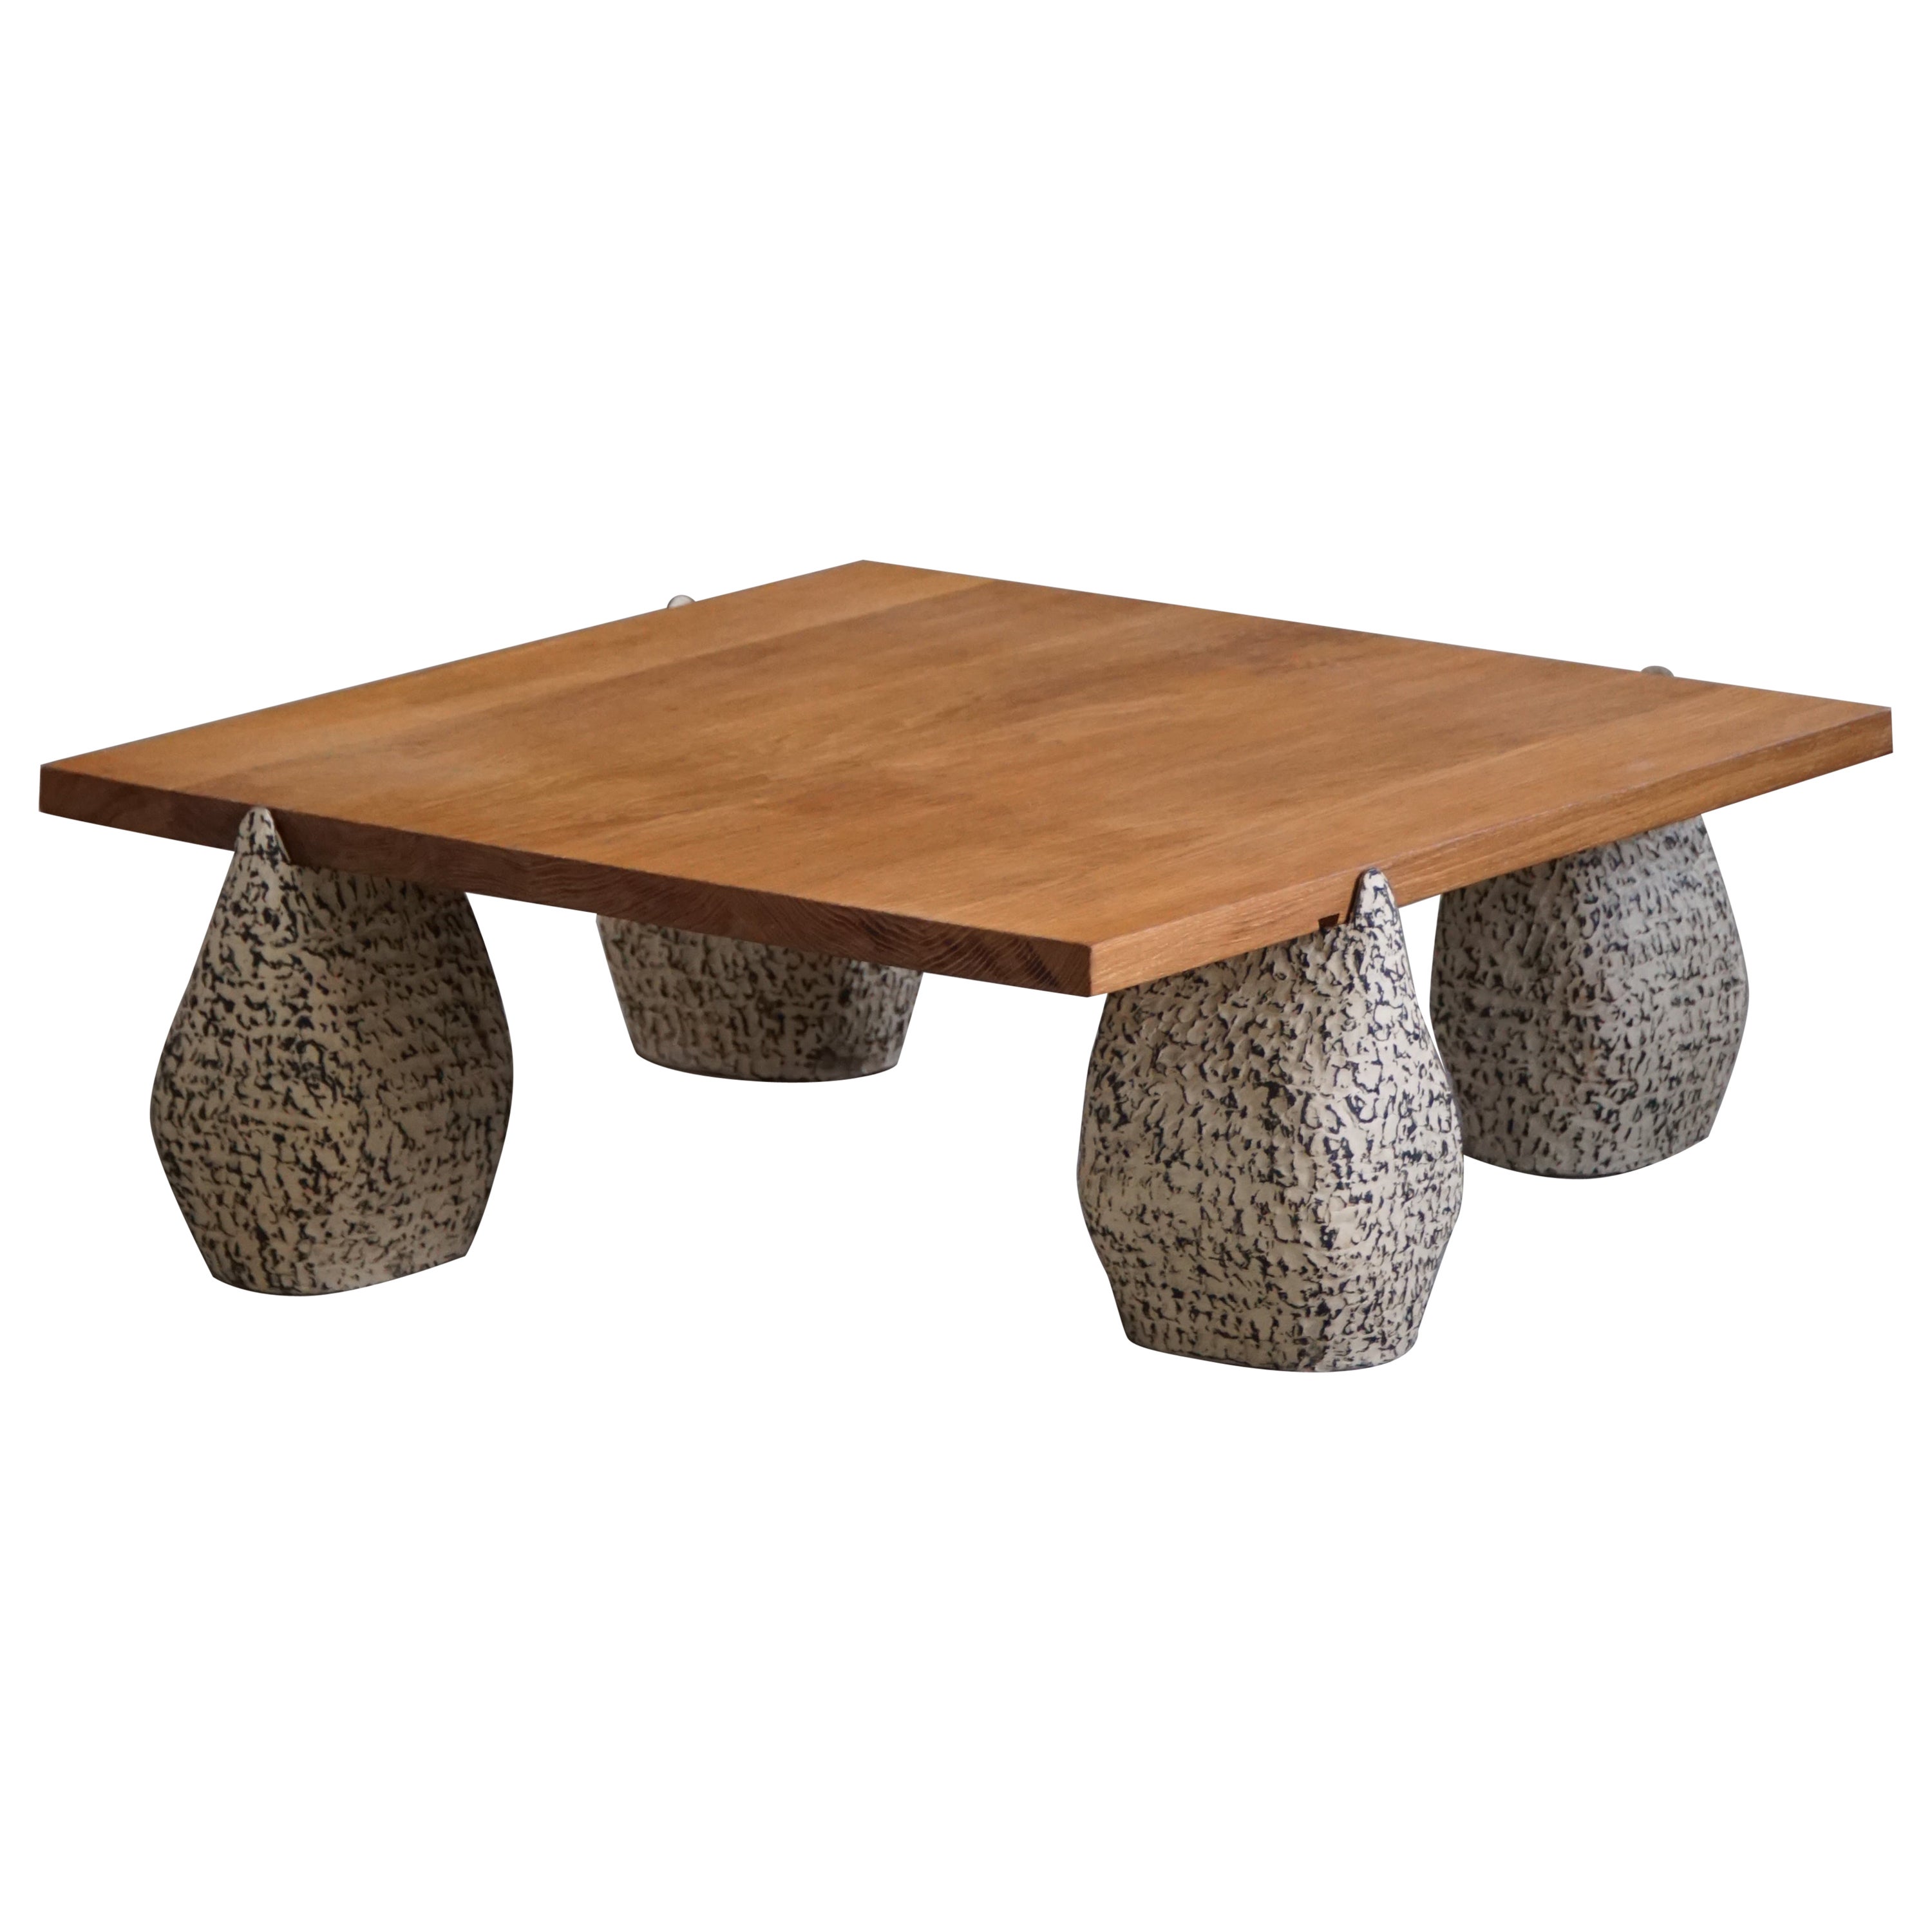 Quadratischer Tisch von eliaselias x Ole Victor, Keramik und Eiche, dänisches Design, 2023